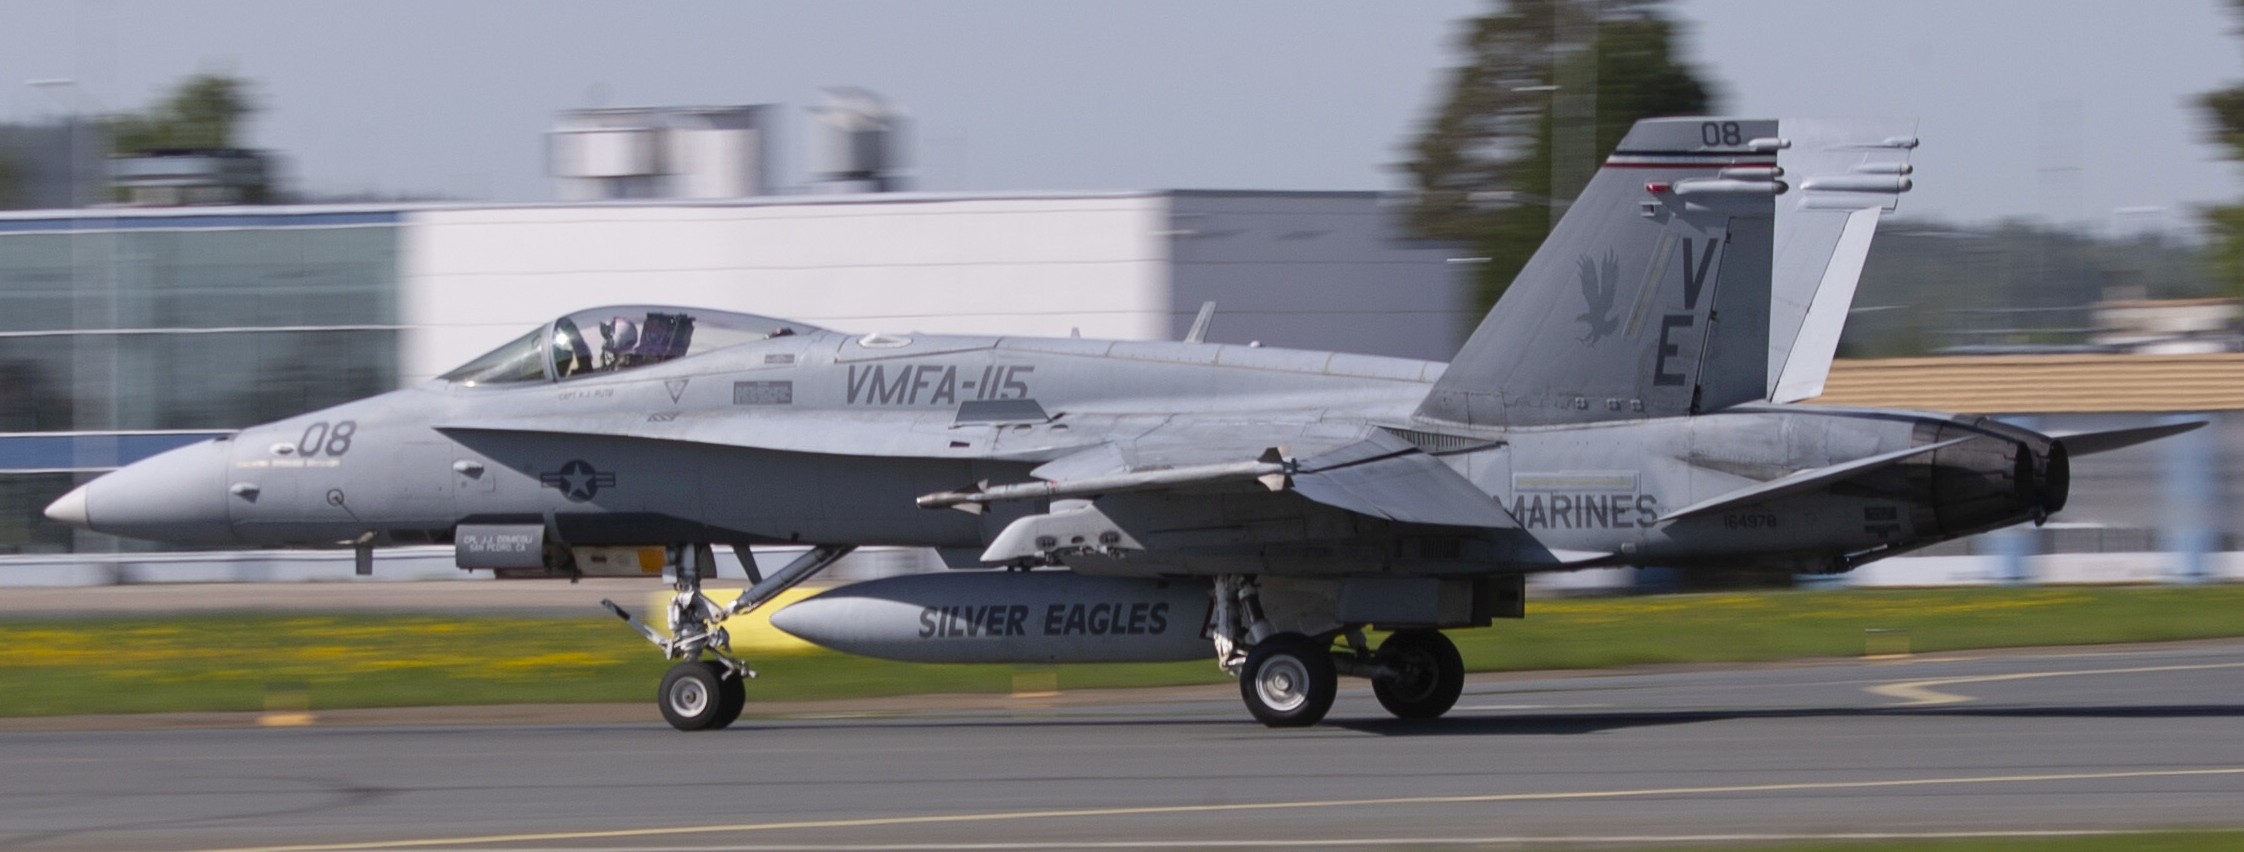 vmfa-115 silver eagles marine fighter attack squadron usmc f/a-18c hornet 219